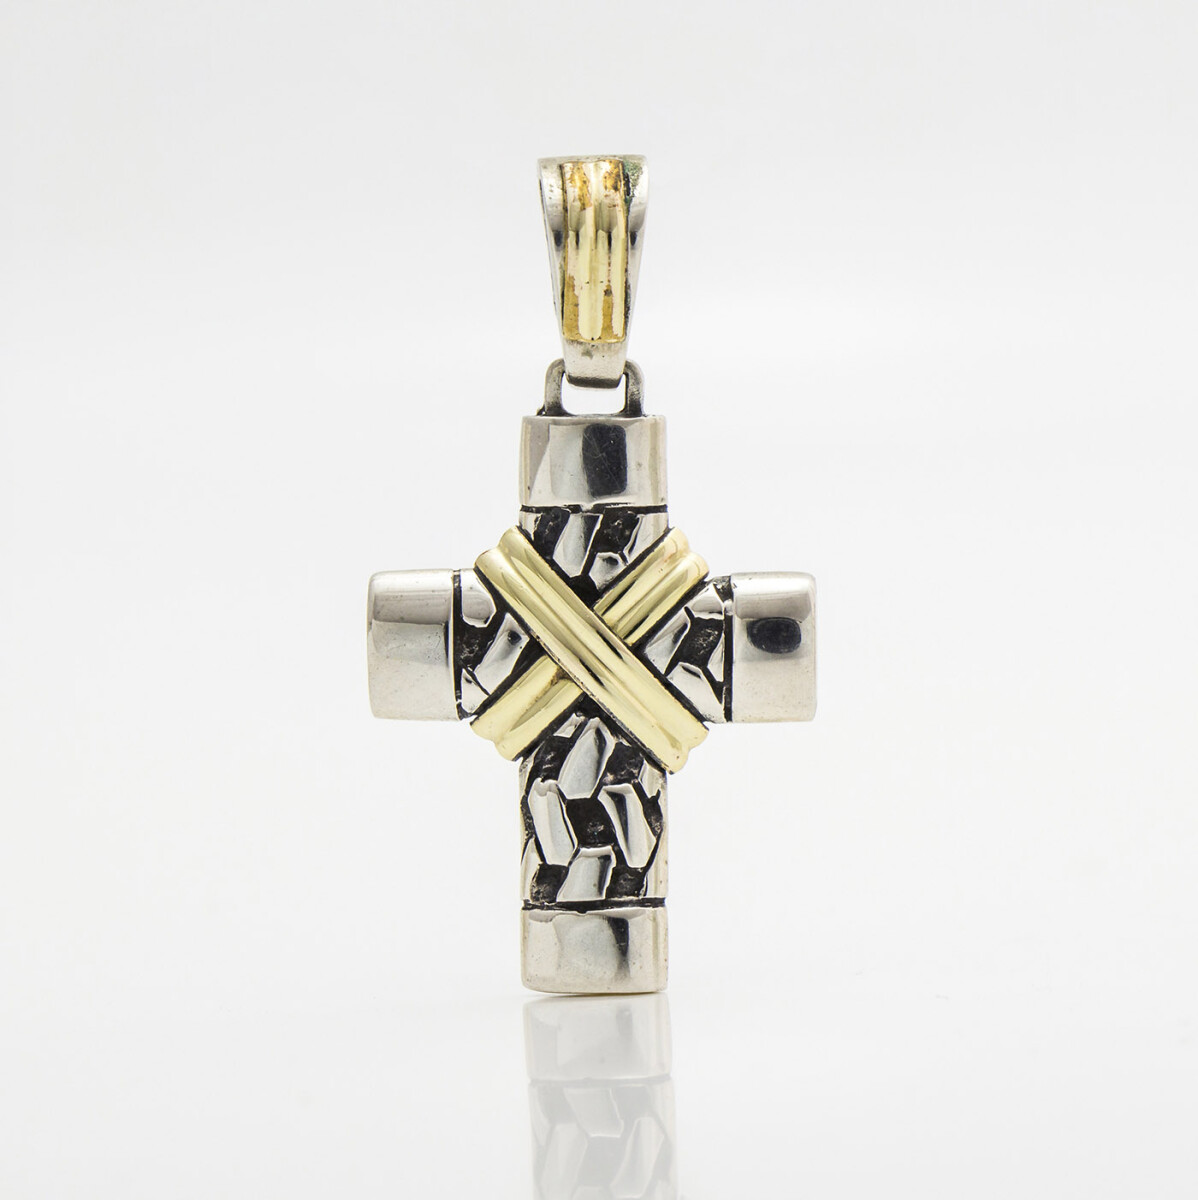 Cruz religiosa de plata 900 con trabas en double de oro 18k., 3cm*2.3cm. 